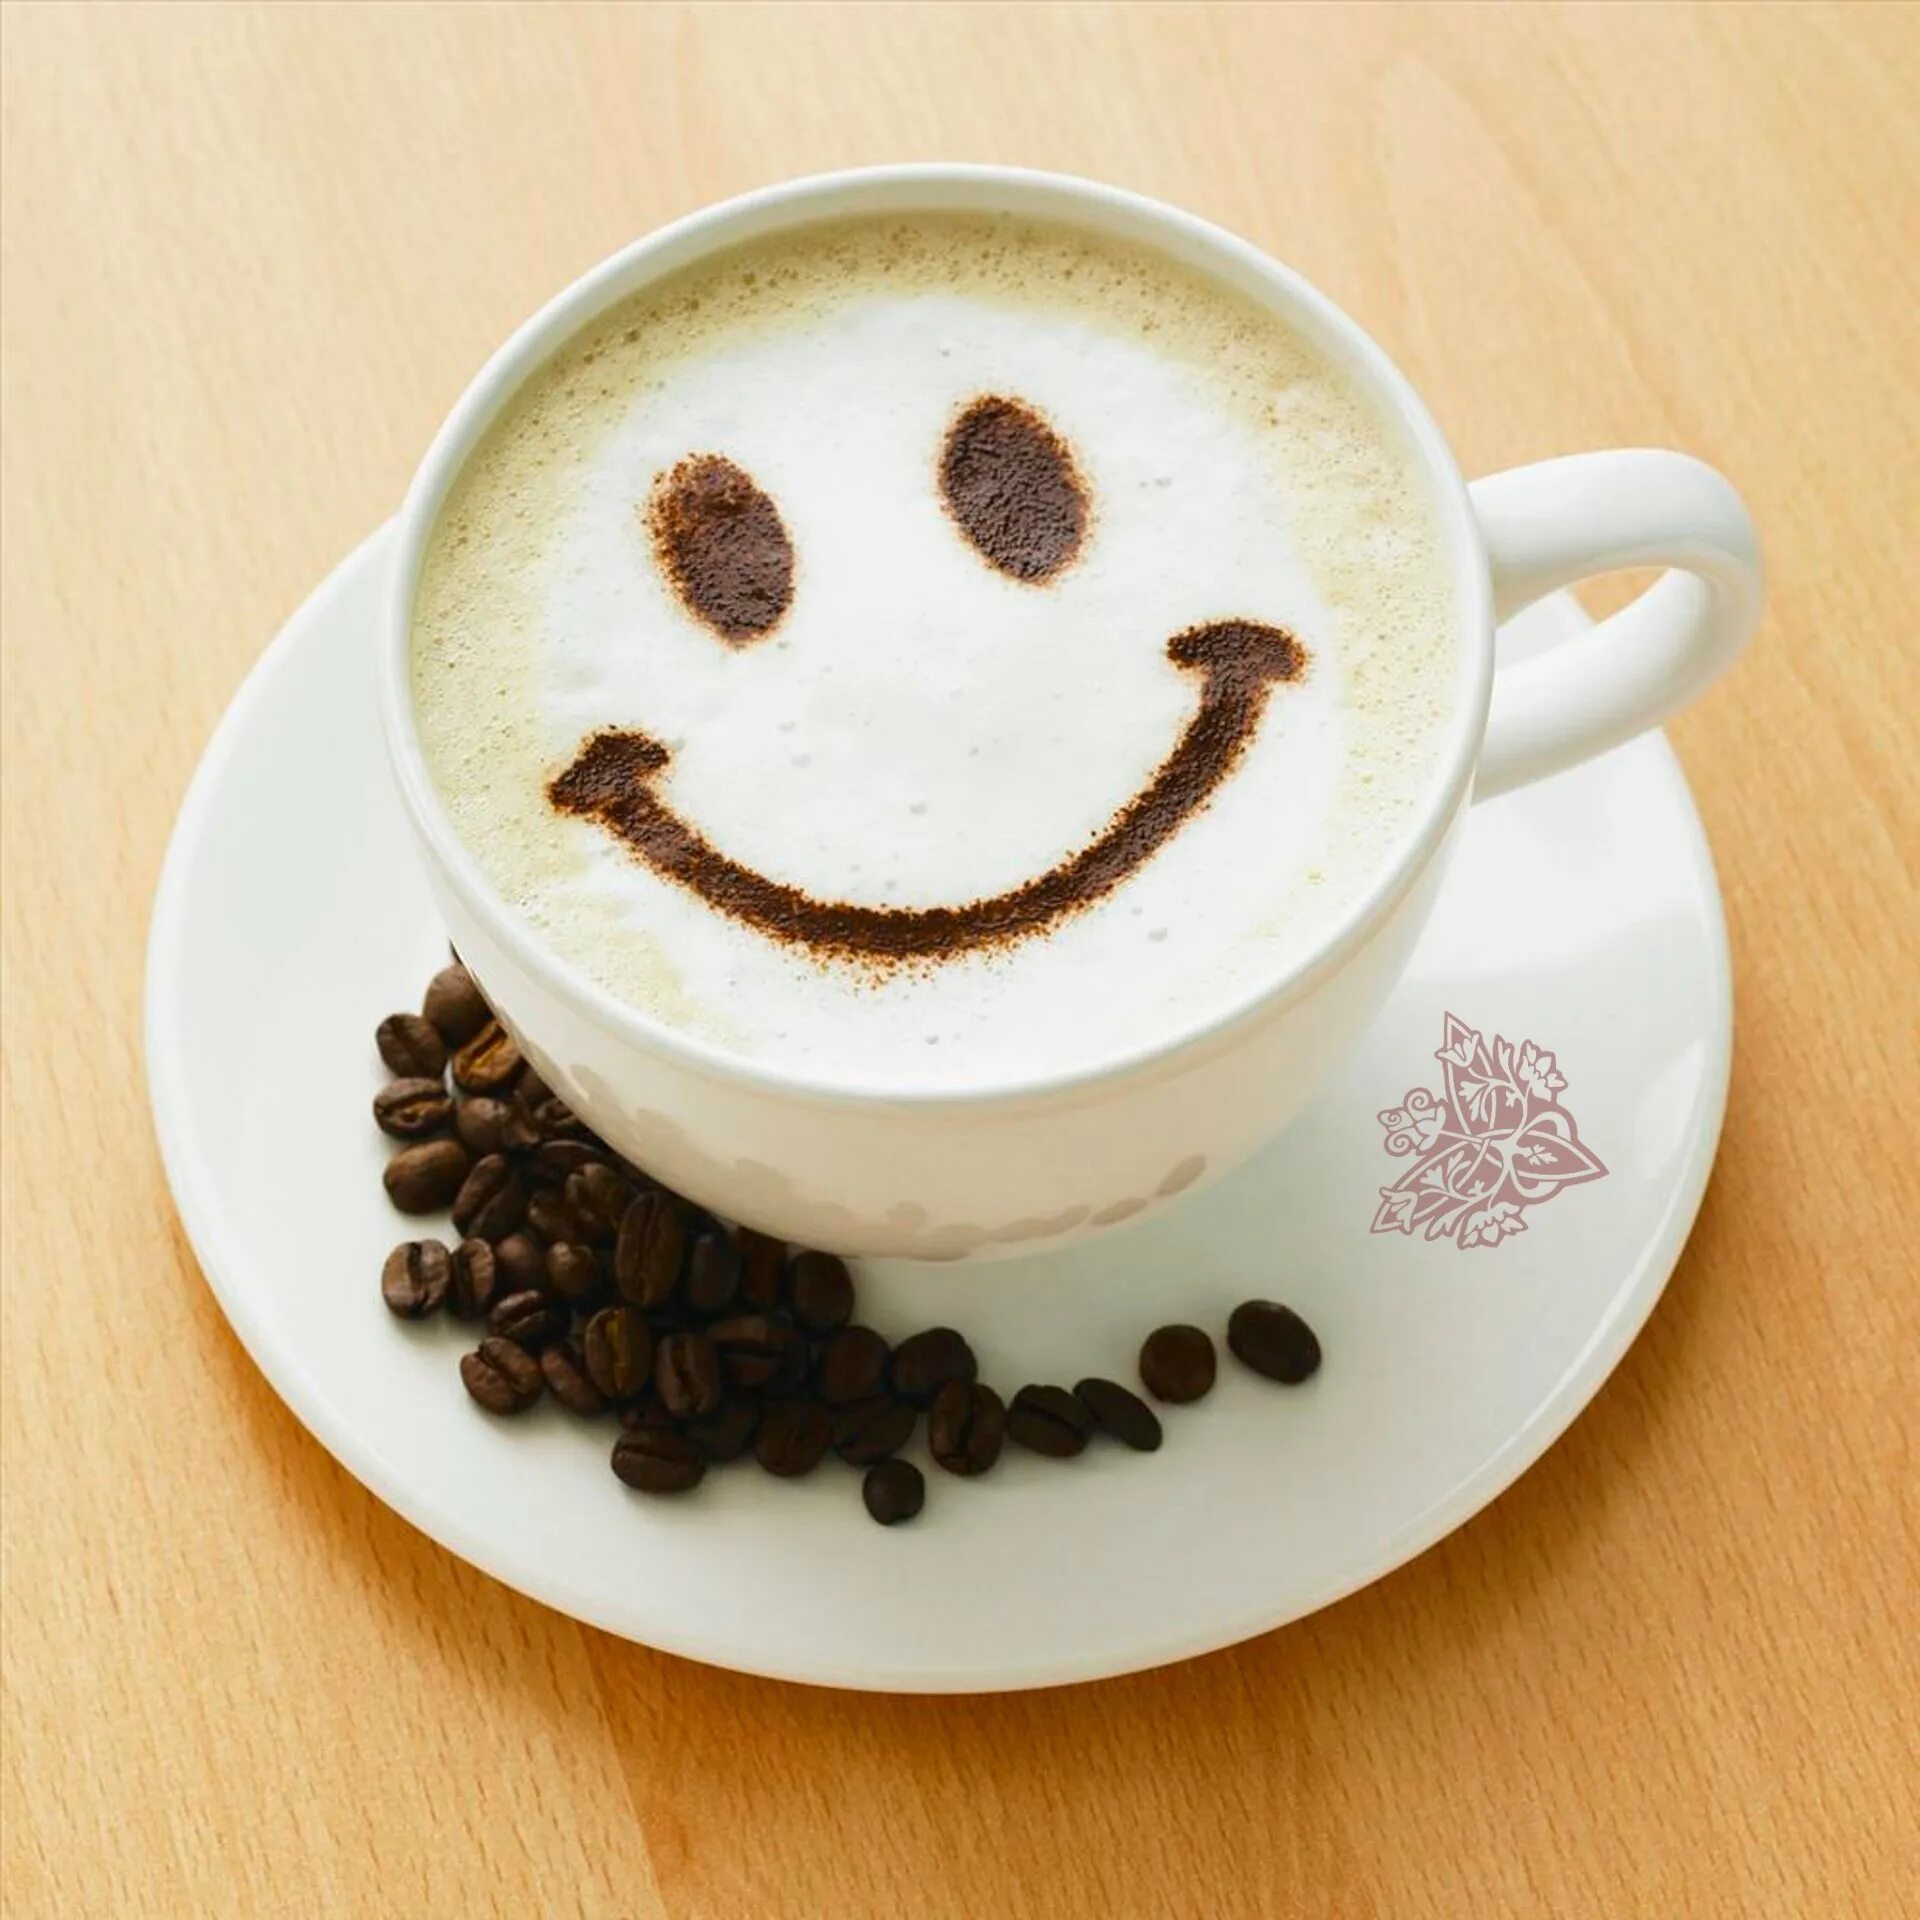 Картинки хорошего дня с кофе. Чашка кофе. Чашка кофе рисунок. Пожелание хорошего дня с кофе. Забавные картинки с добрым утром.